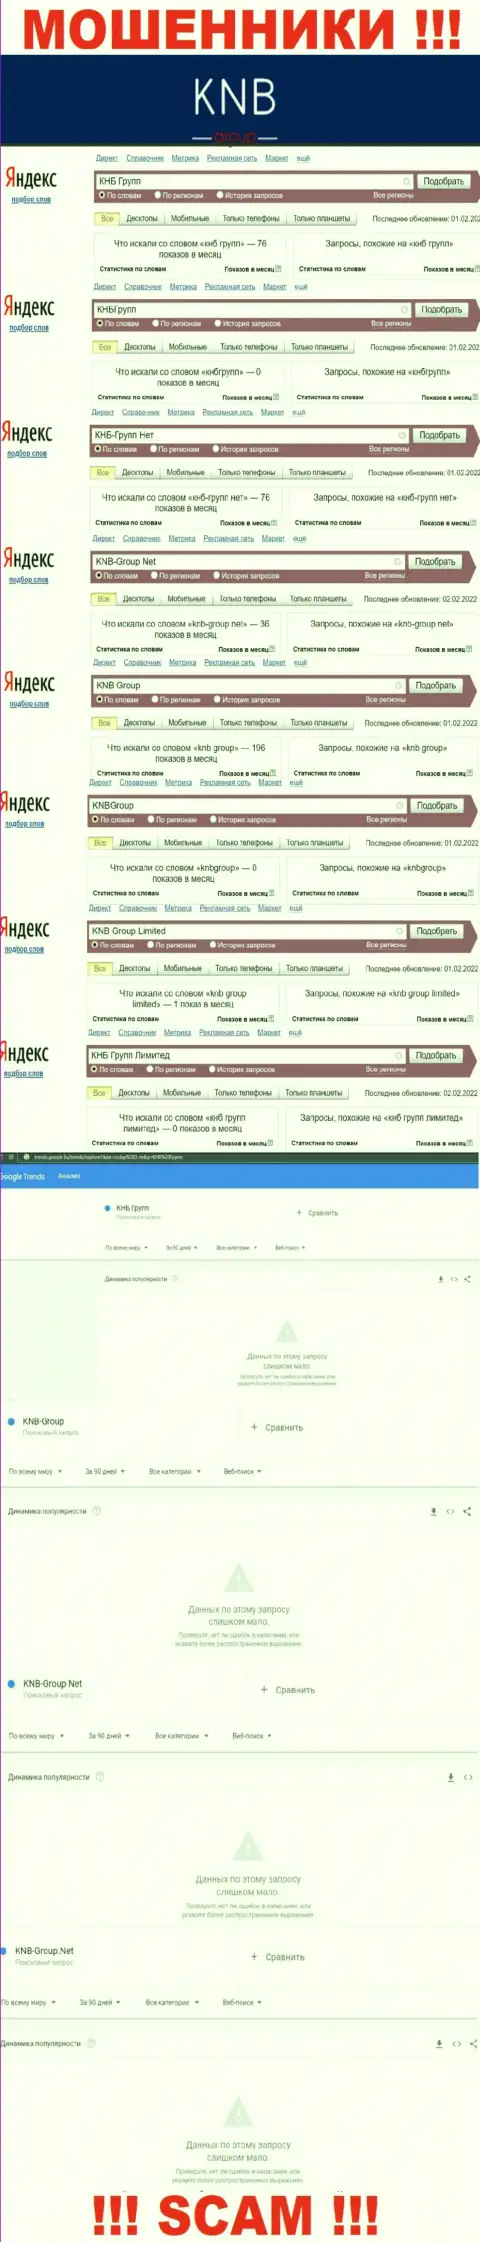 Скриншот итогов поисковых запросов по противоправно действующей организации КНБ Групп